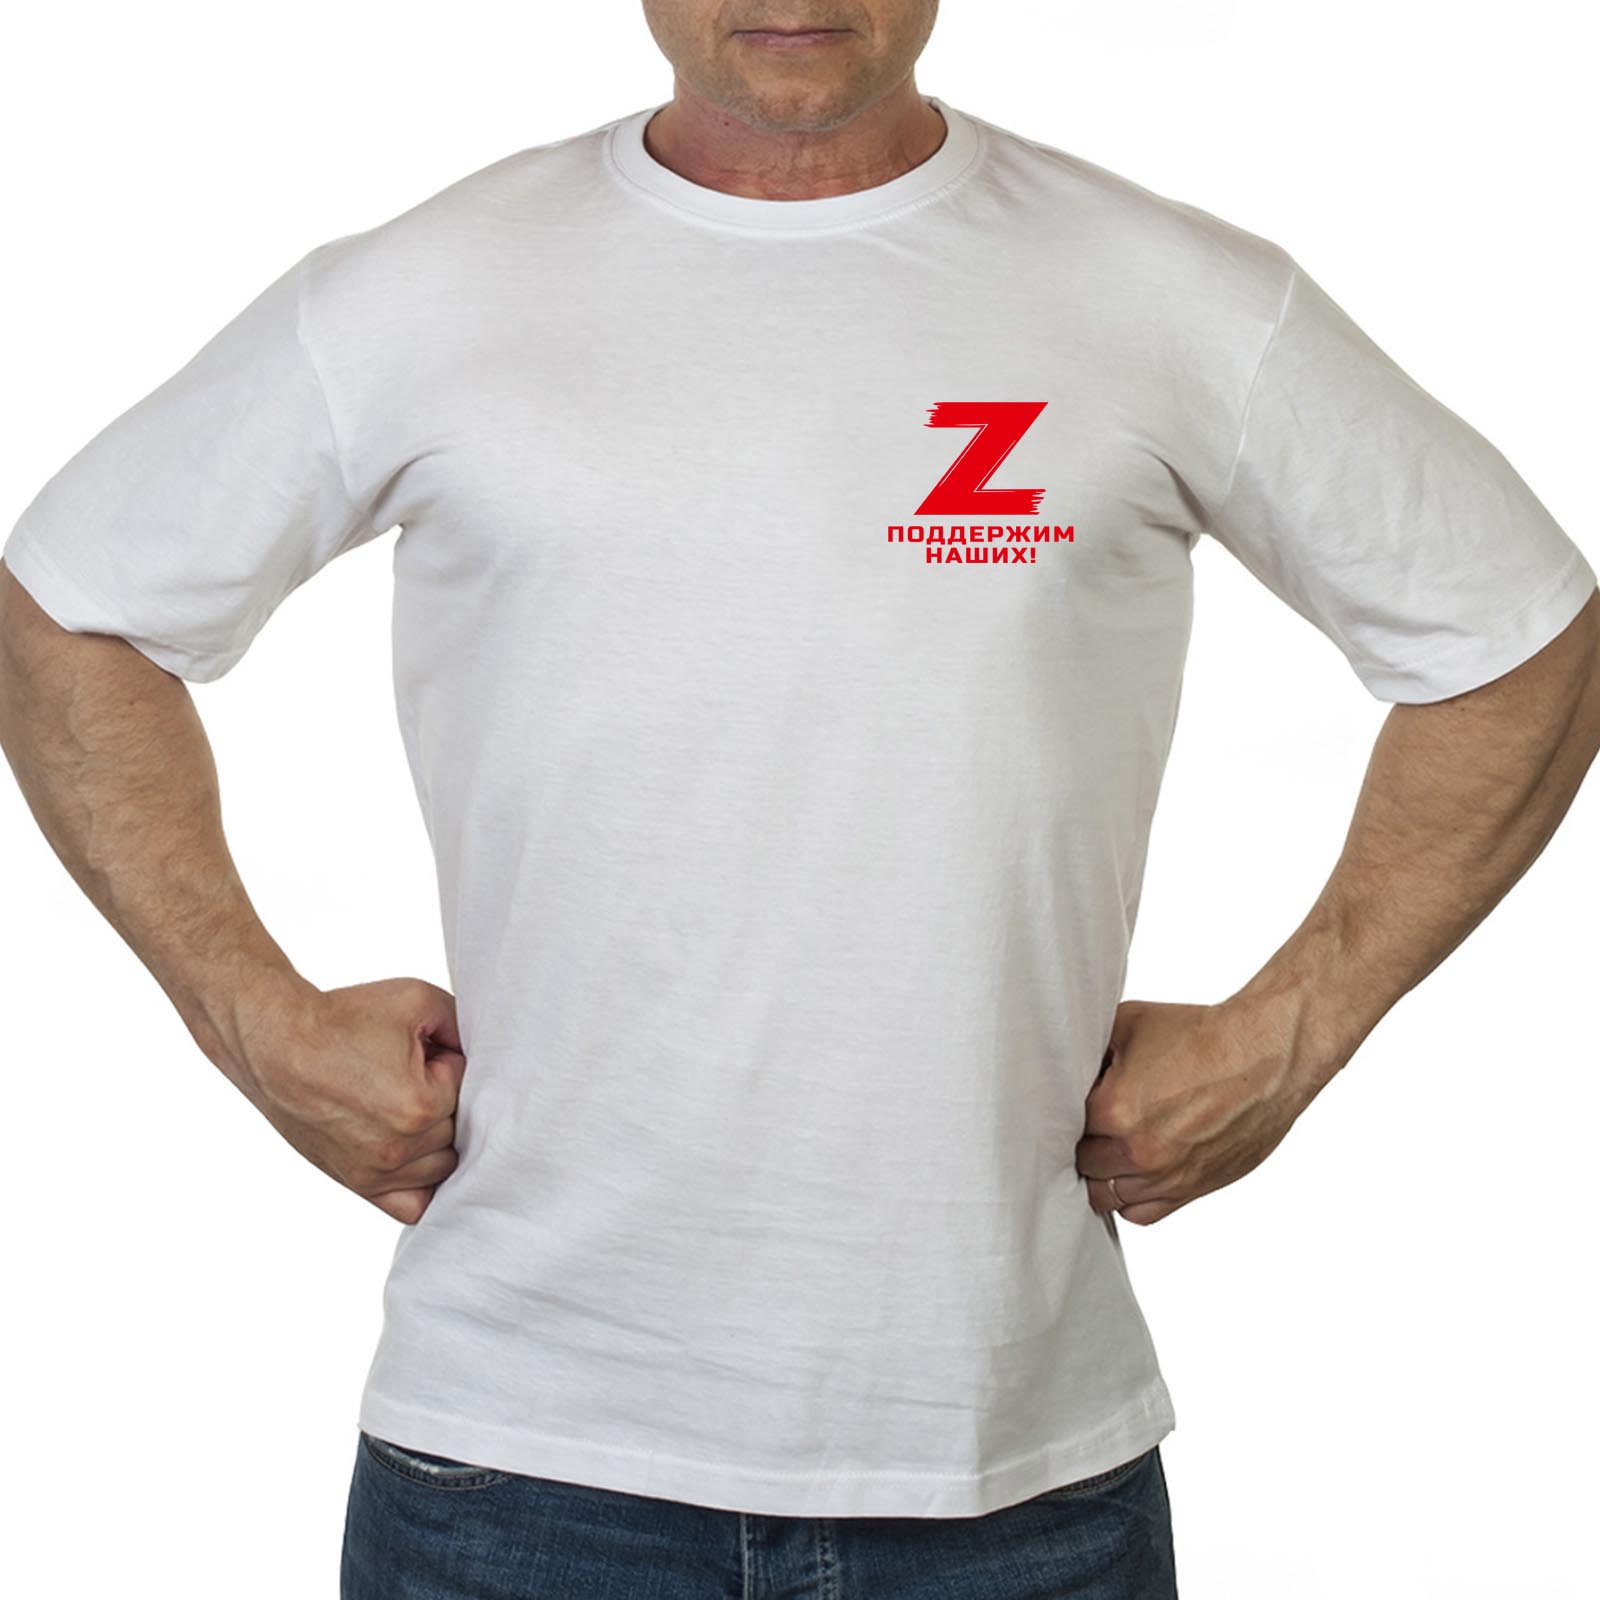 Заказать в интернете мужскую футболку Z